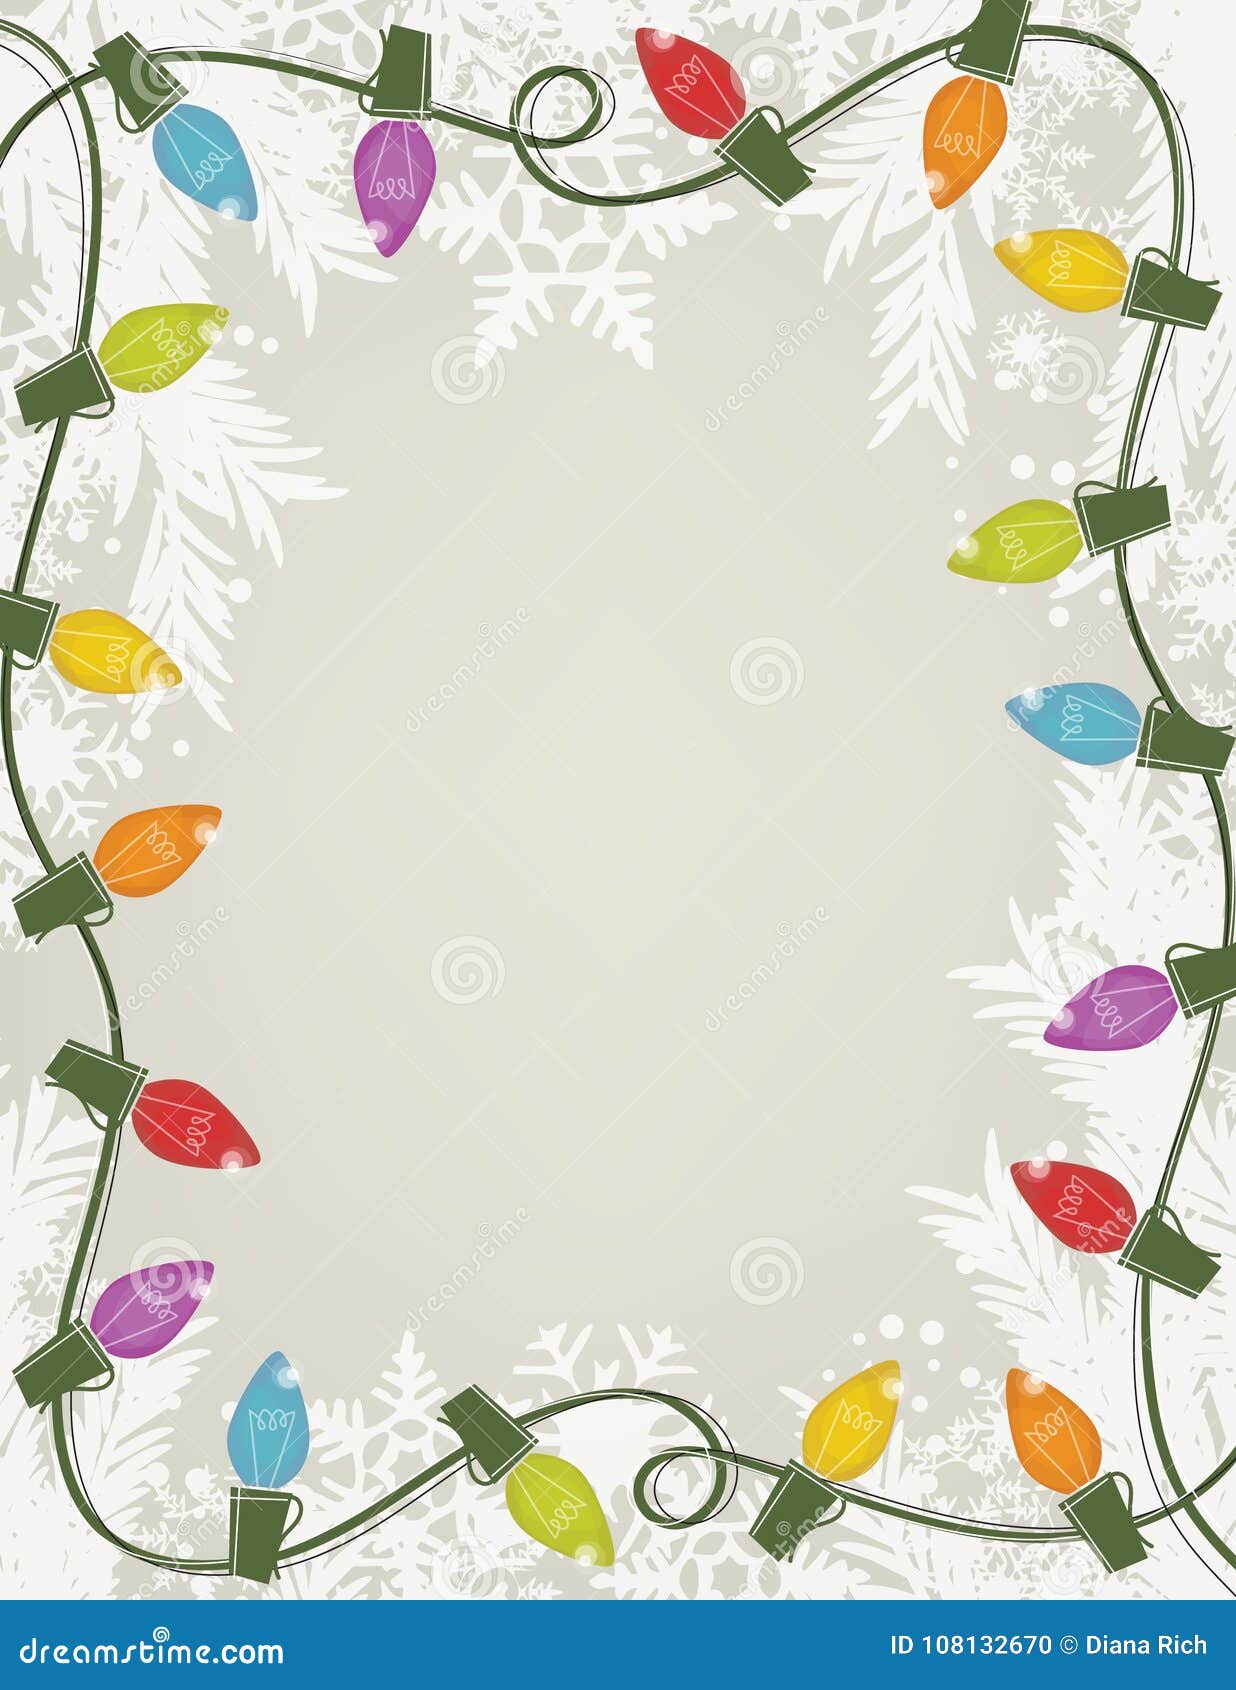 Đèn lồng phong cách Retro với cây thông Giáng Sinh trắng và tuyết tung tăng... Hãy cùng khám phá không gian Giáng Sinh đầy ấm áp và tràn ngập niềm vui bằng đèn lồng phong cách Retro và cây thông trắng rực rỡ. Với các chi tiết tuyết giả, tạo nên không khí mùa đông tuyết trắng, hồng phấn, đầy cuốn hút. Hãy đón Giáng Sinh sớm và trang trí ngay cho nhà mình một bầu không khí lễ hội như trong cổ tích.